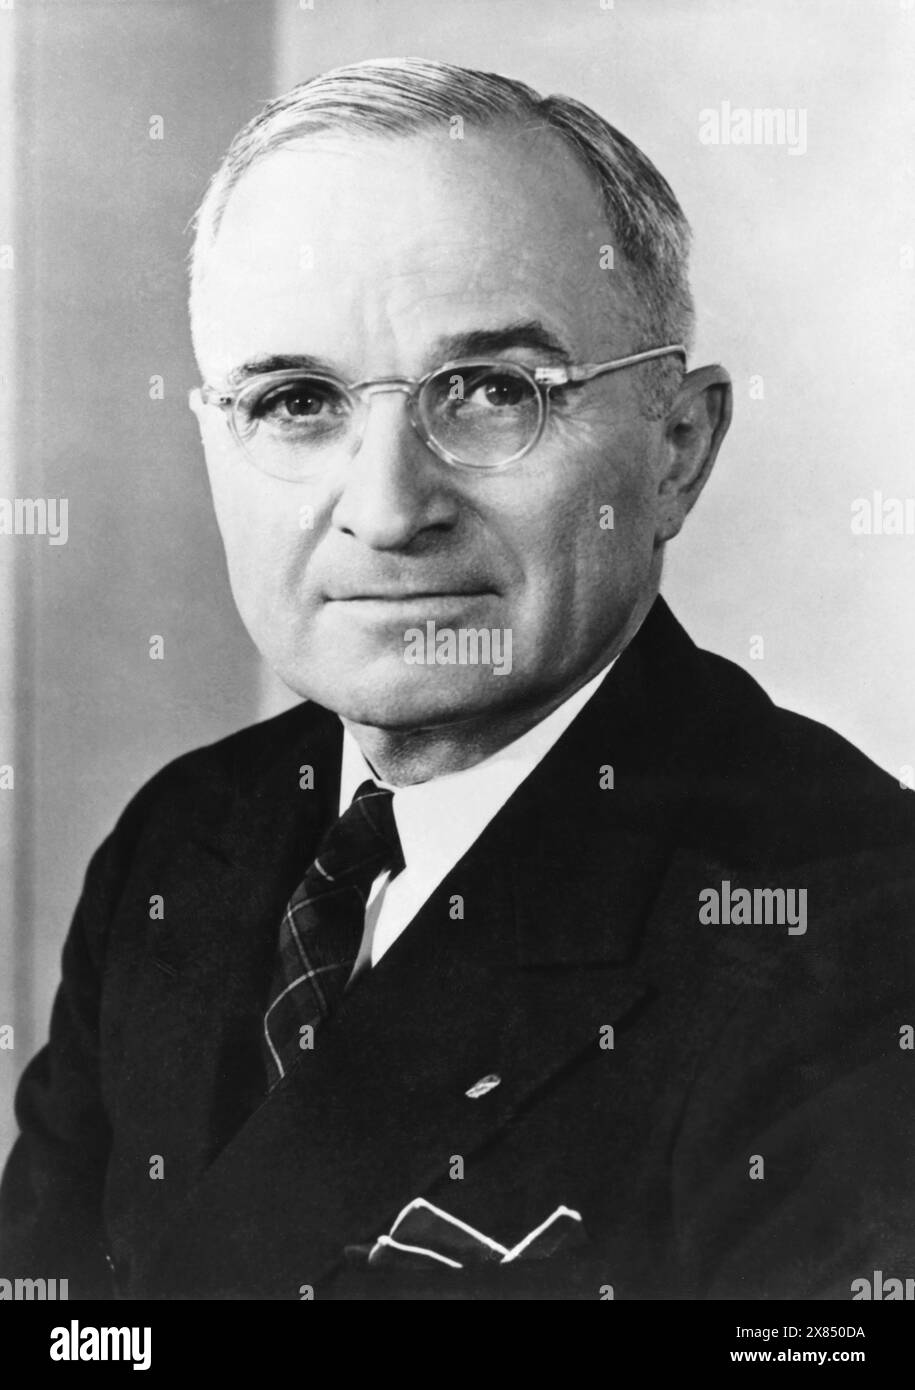 Harry S. Truman. Probablement pris dans les années 1940-50 Banque D'Images